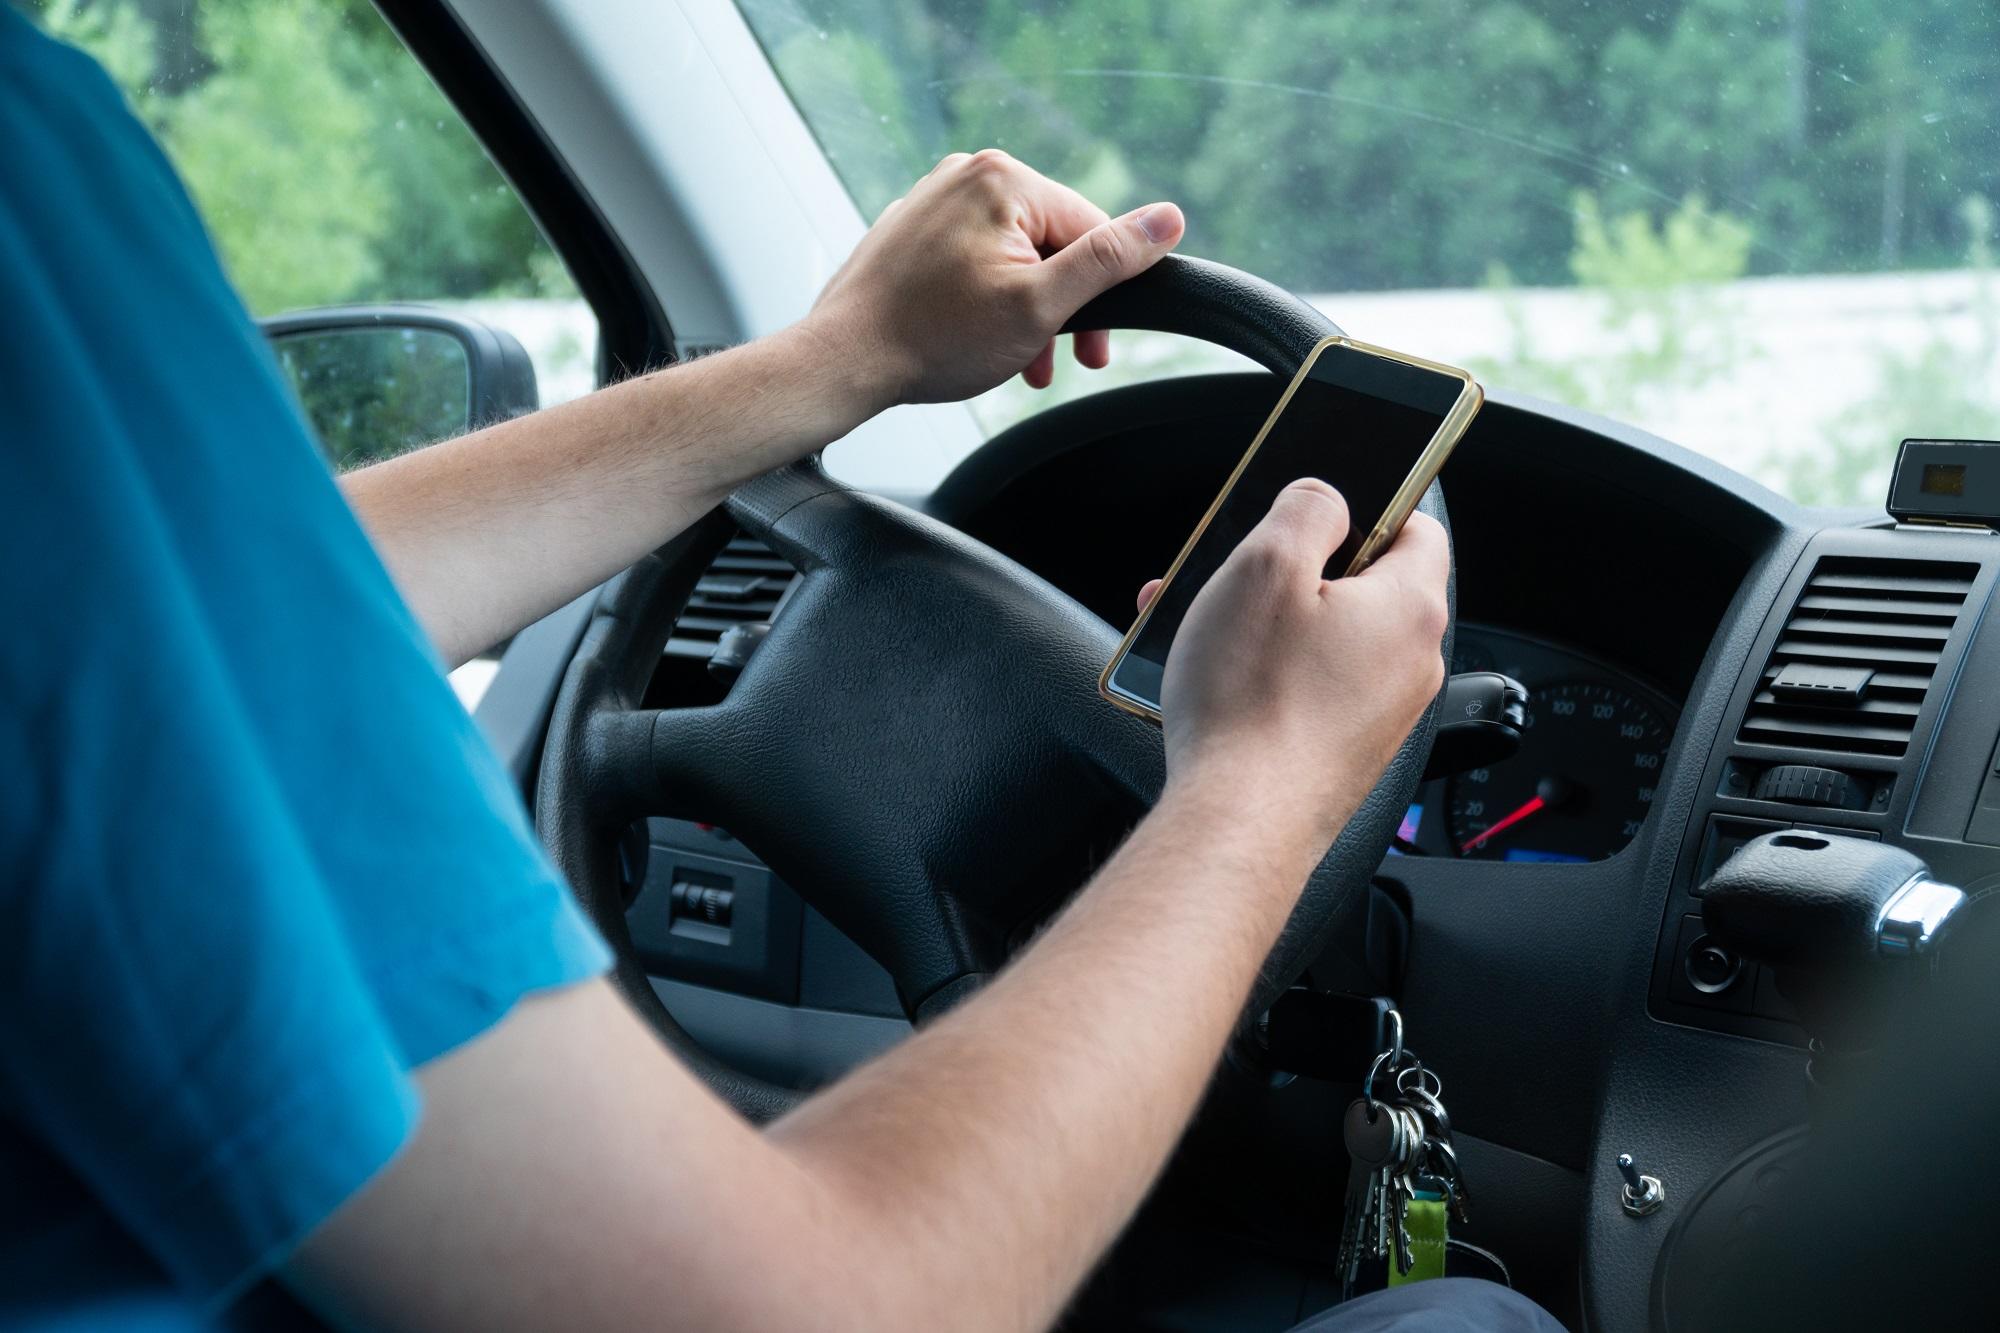 يعاقب بغرامة مقدارها 15 دينارا، سائق المركبة عند استخدامه الهاتف أثناء سير المركبة إذا كان الهاتف أو جزء منه محمولا باليد. (Shutterstock)